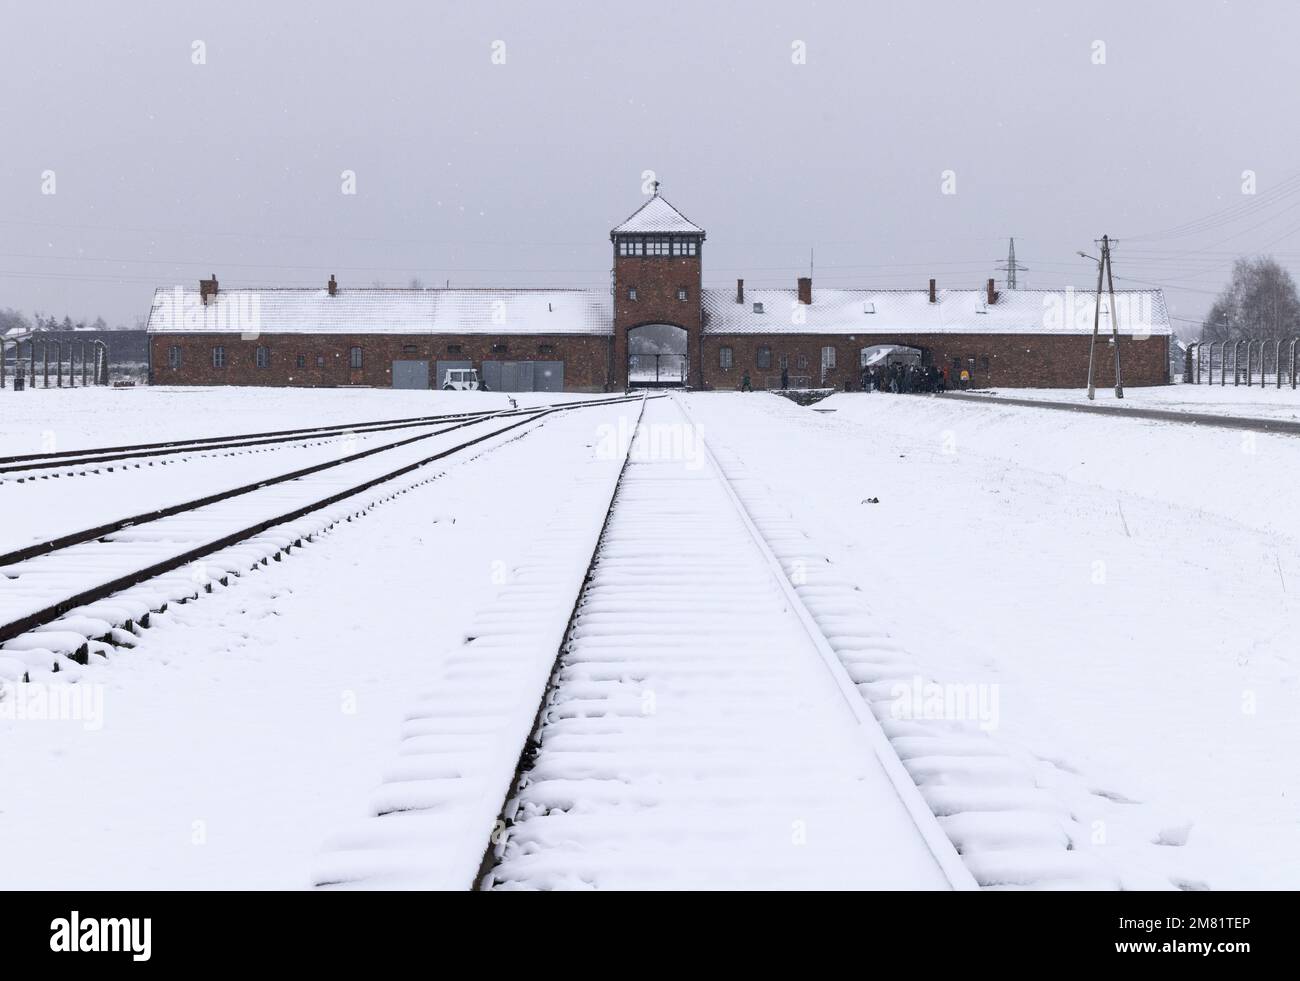 Campo de concentración de Auschwitz Birkenau; puerta de entrada sombría y línea de ferrocarril en la nieve de invierno; Auschwitz, Oswiecim Polonia; Patrimonio de la Humanidad de la UNESCO. Foto de stock